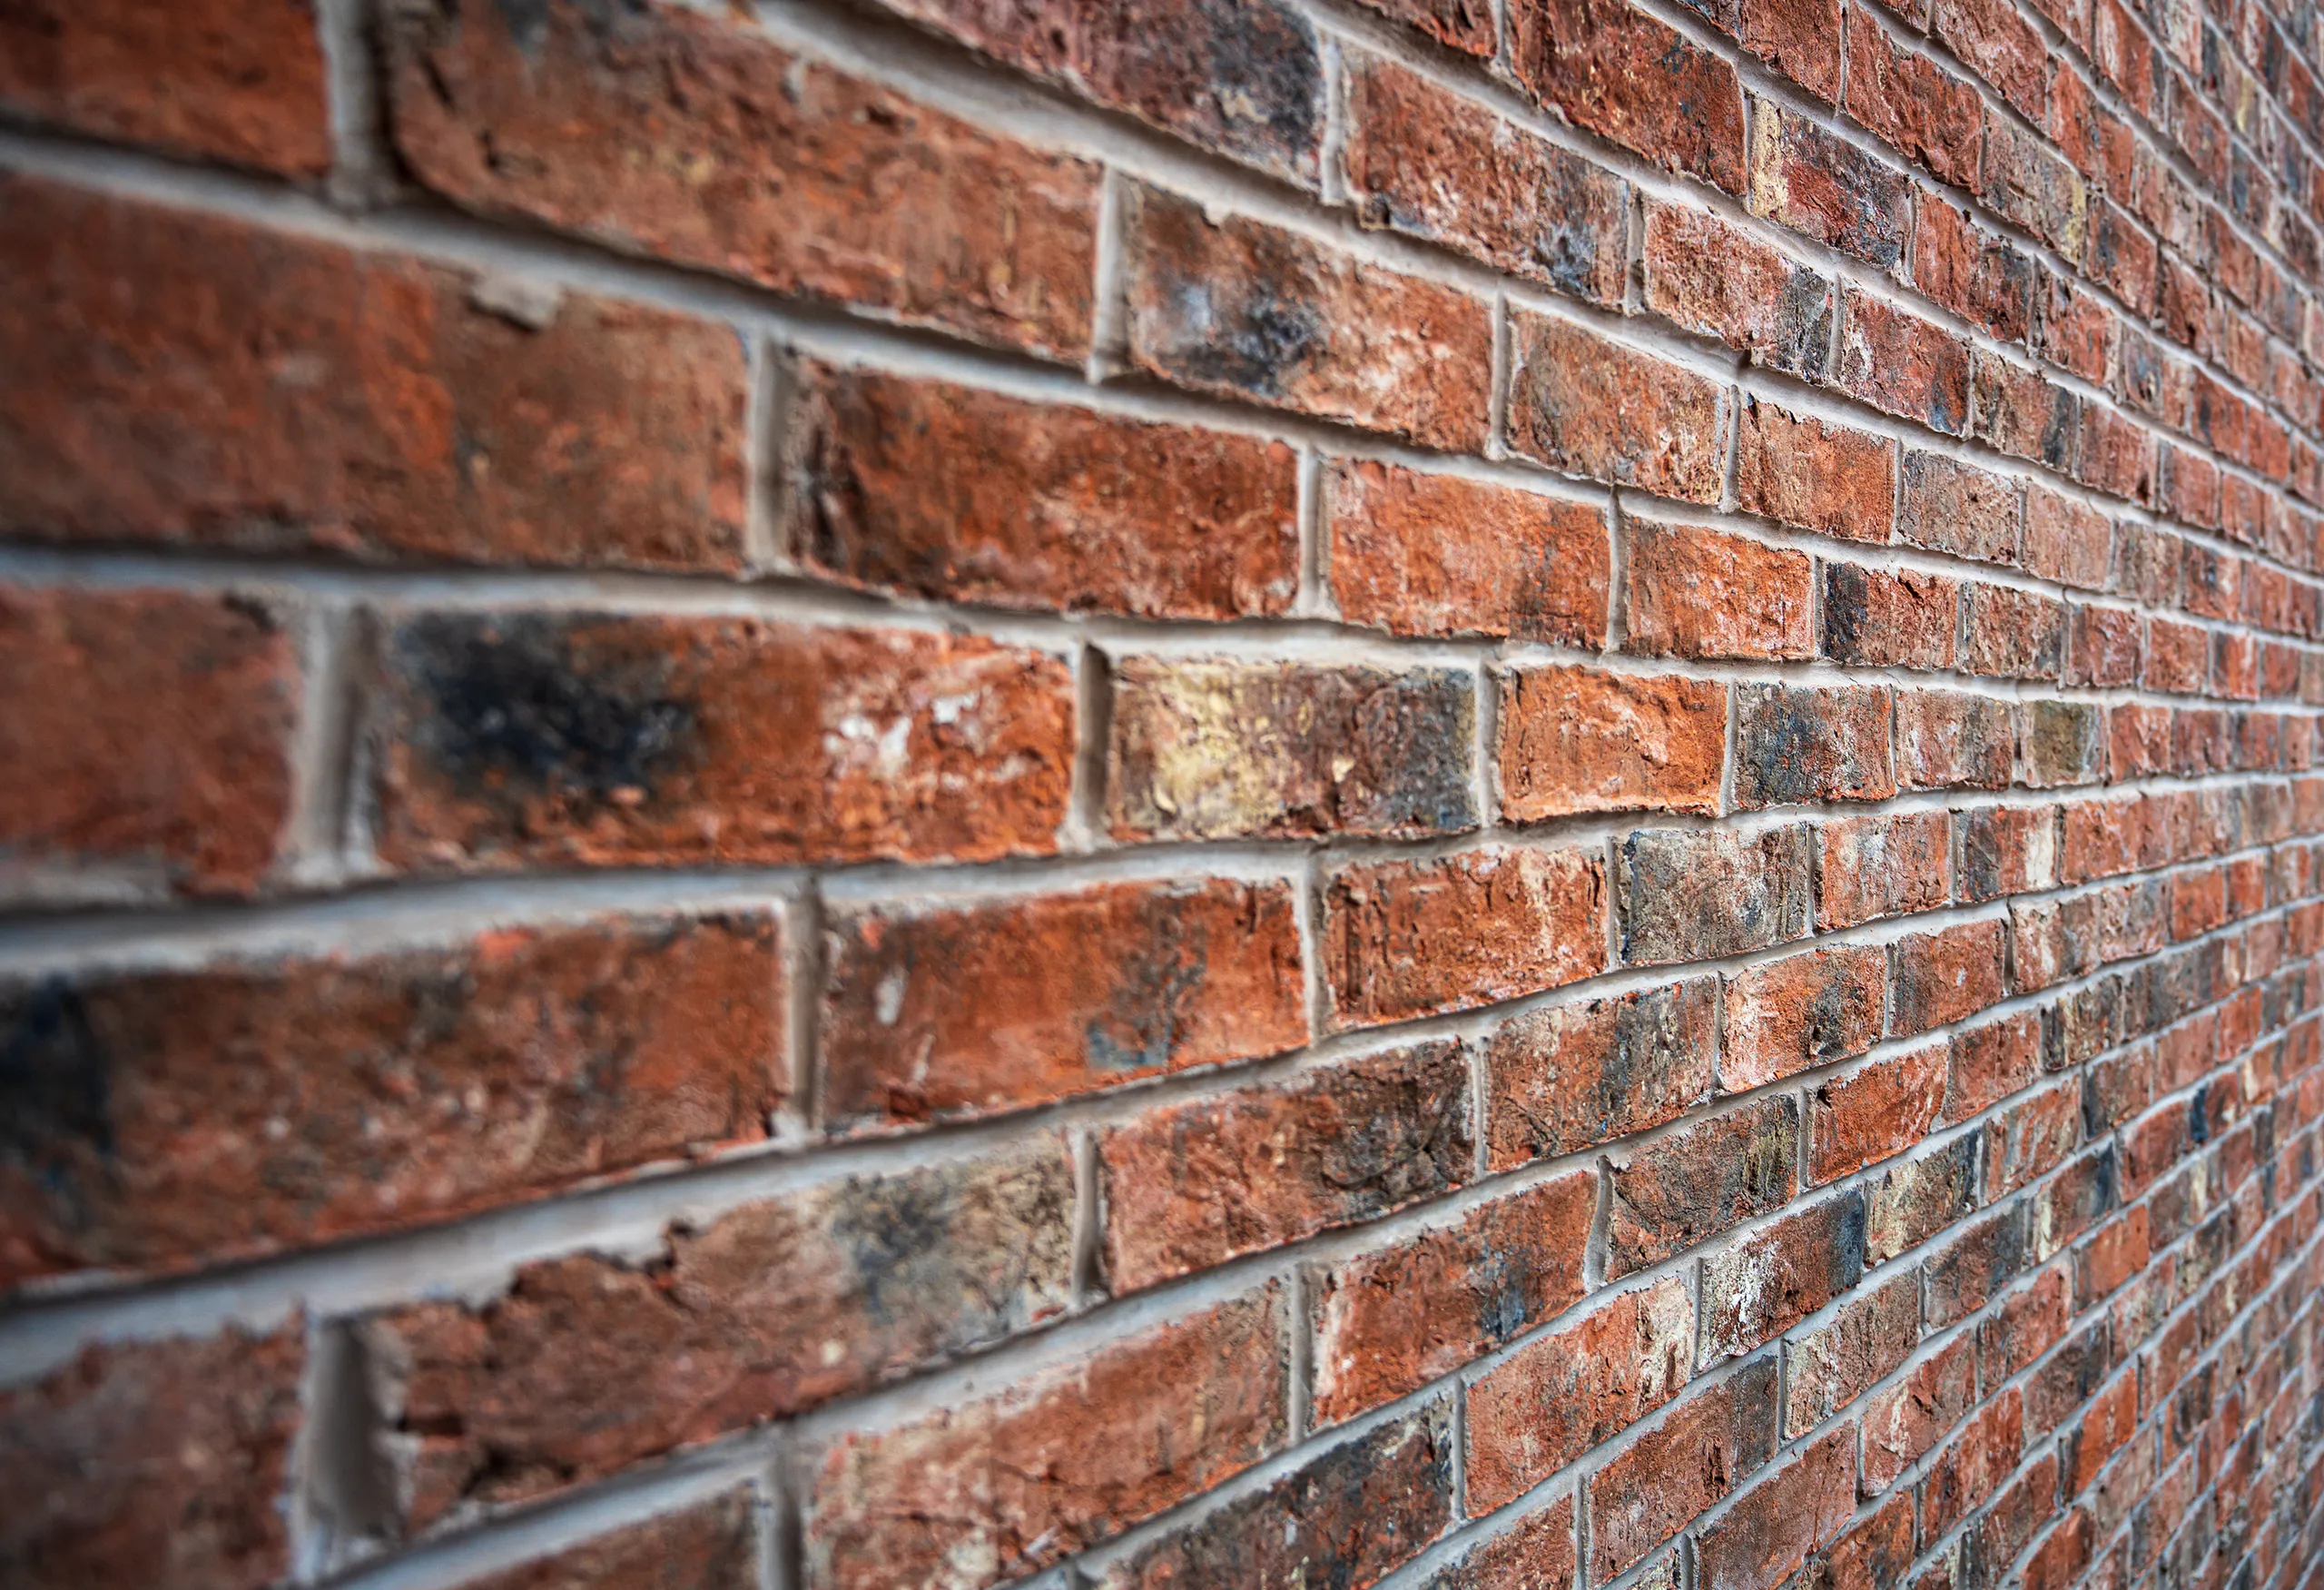 Choosing brickwork styles